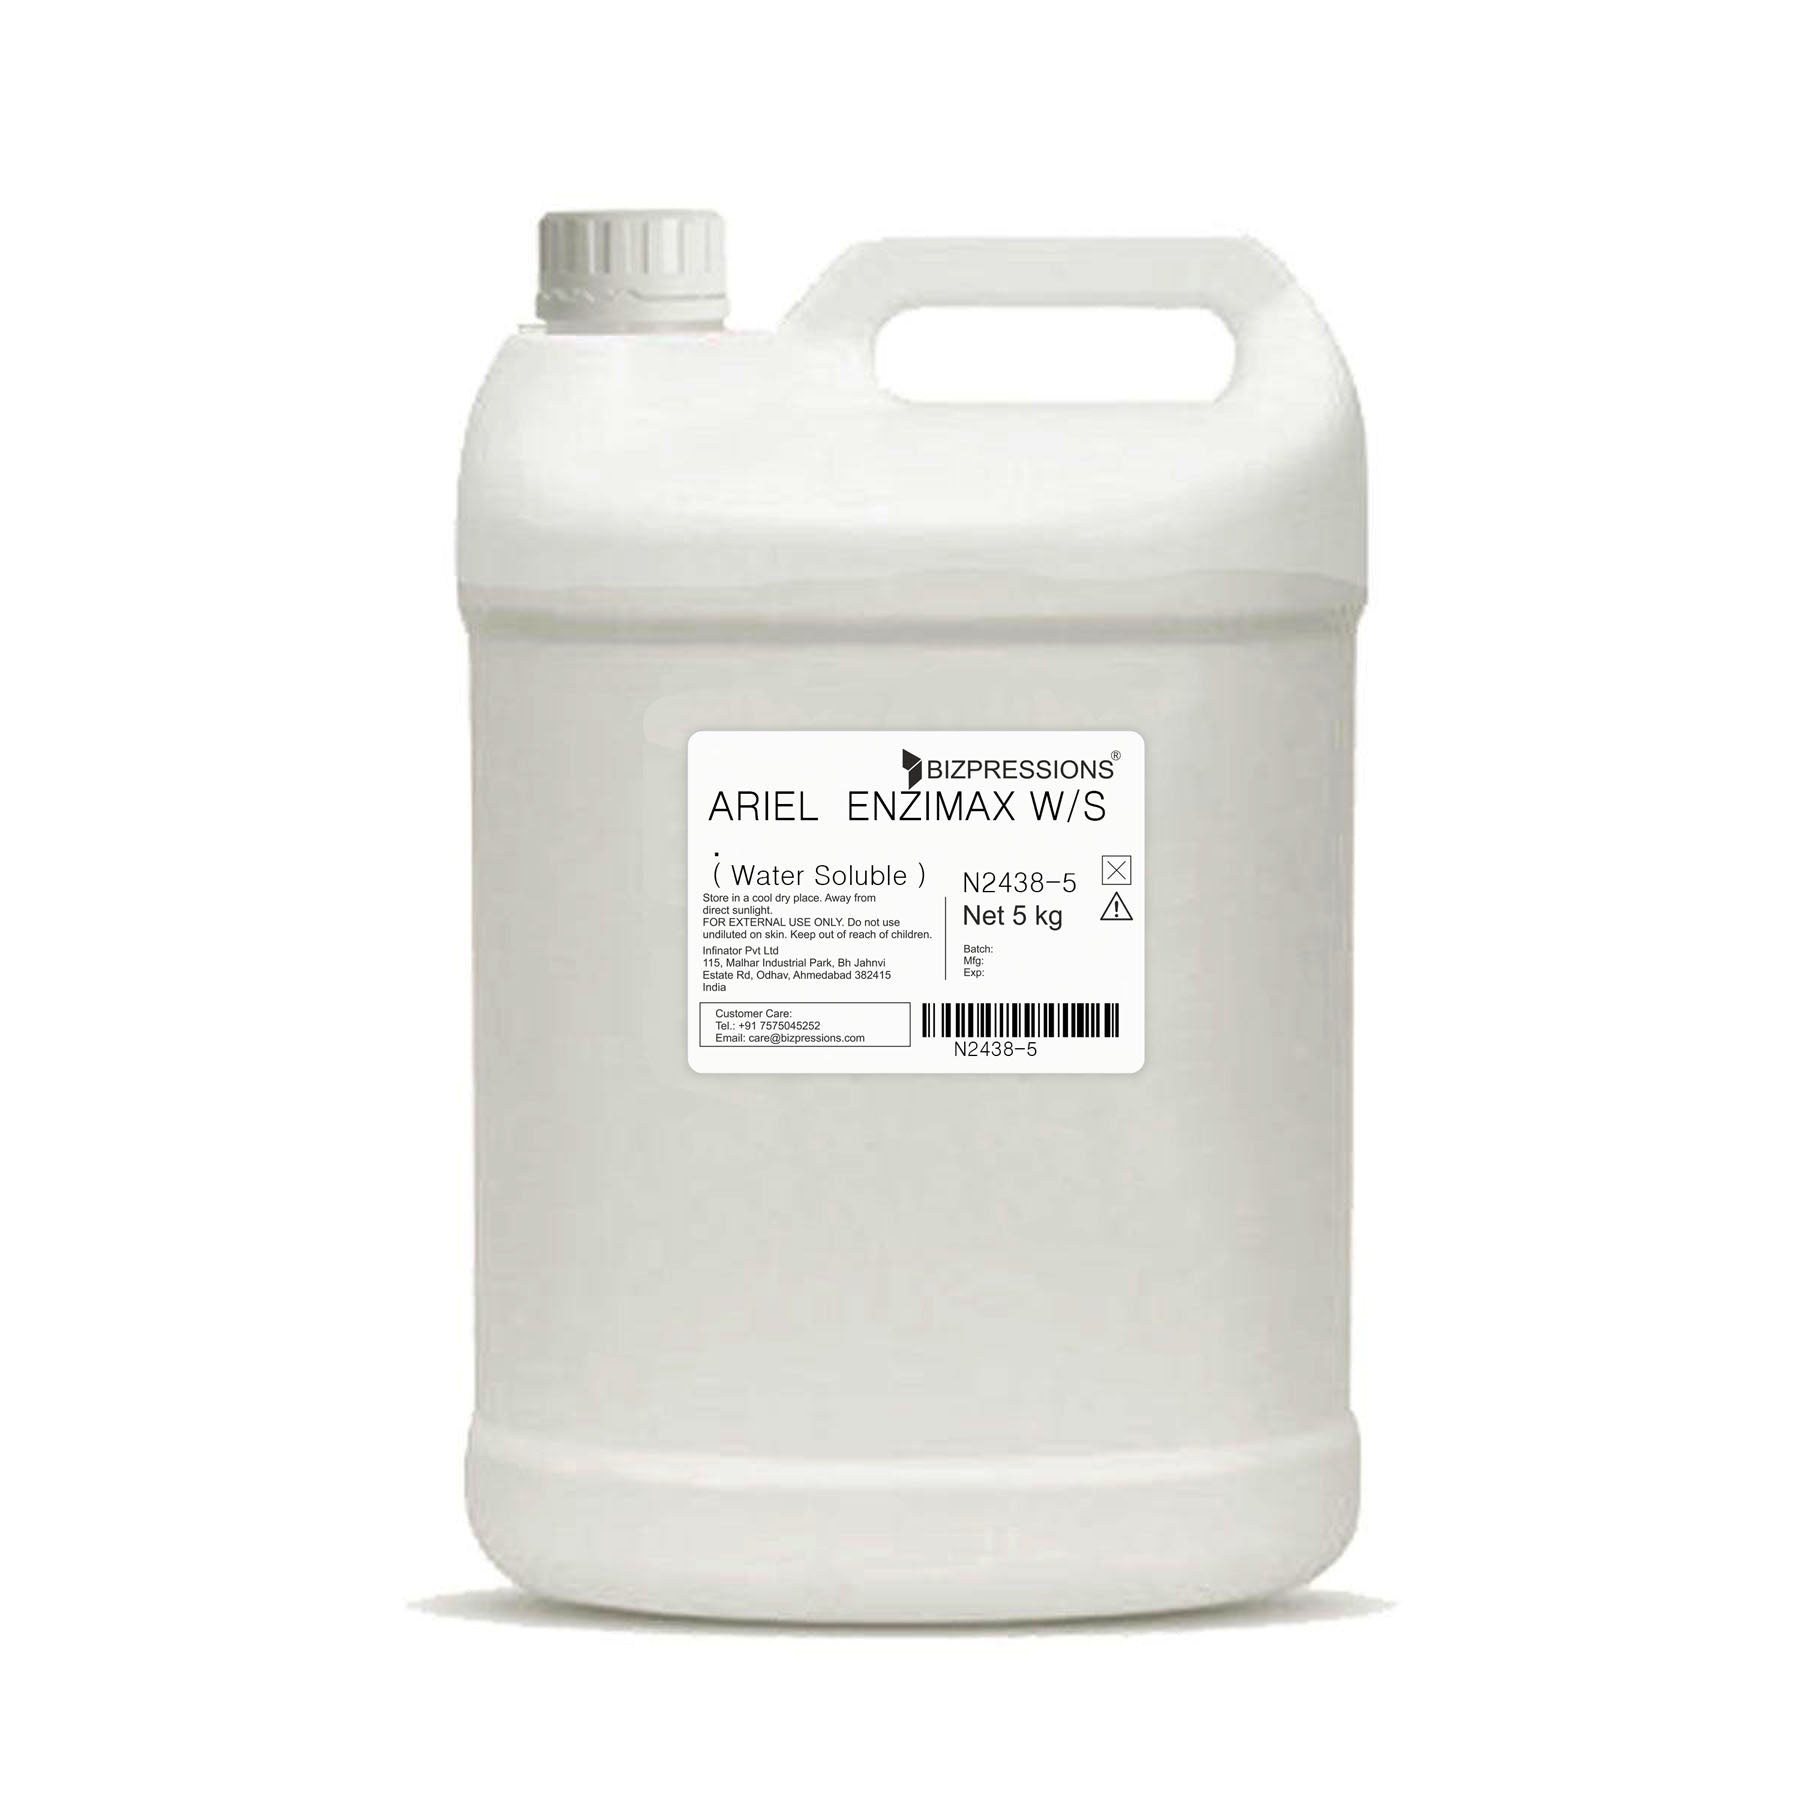 ARIEL ENZIMAX W/S - Fragrance ( Water Soluble ) - 5 kg